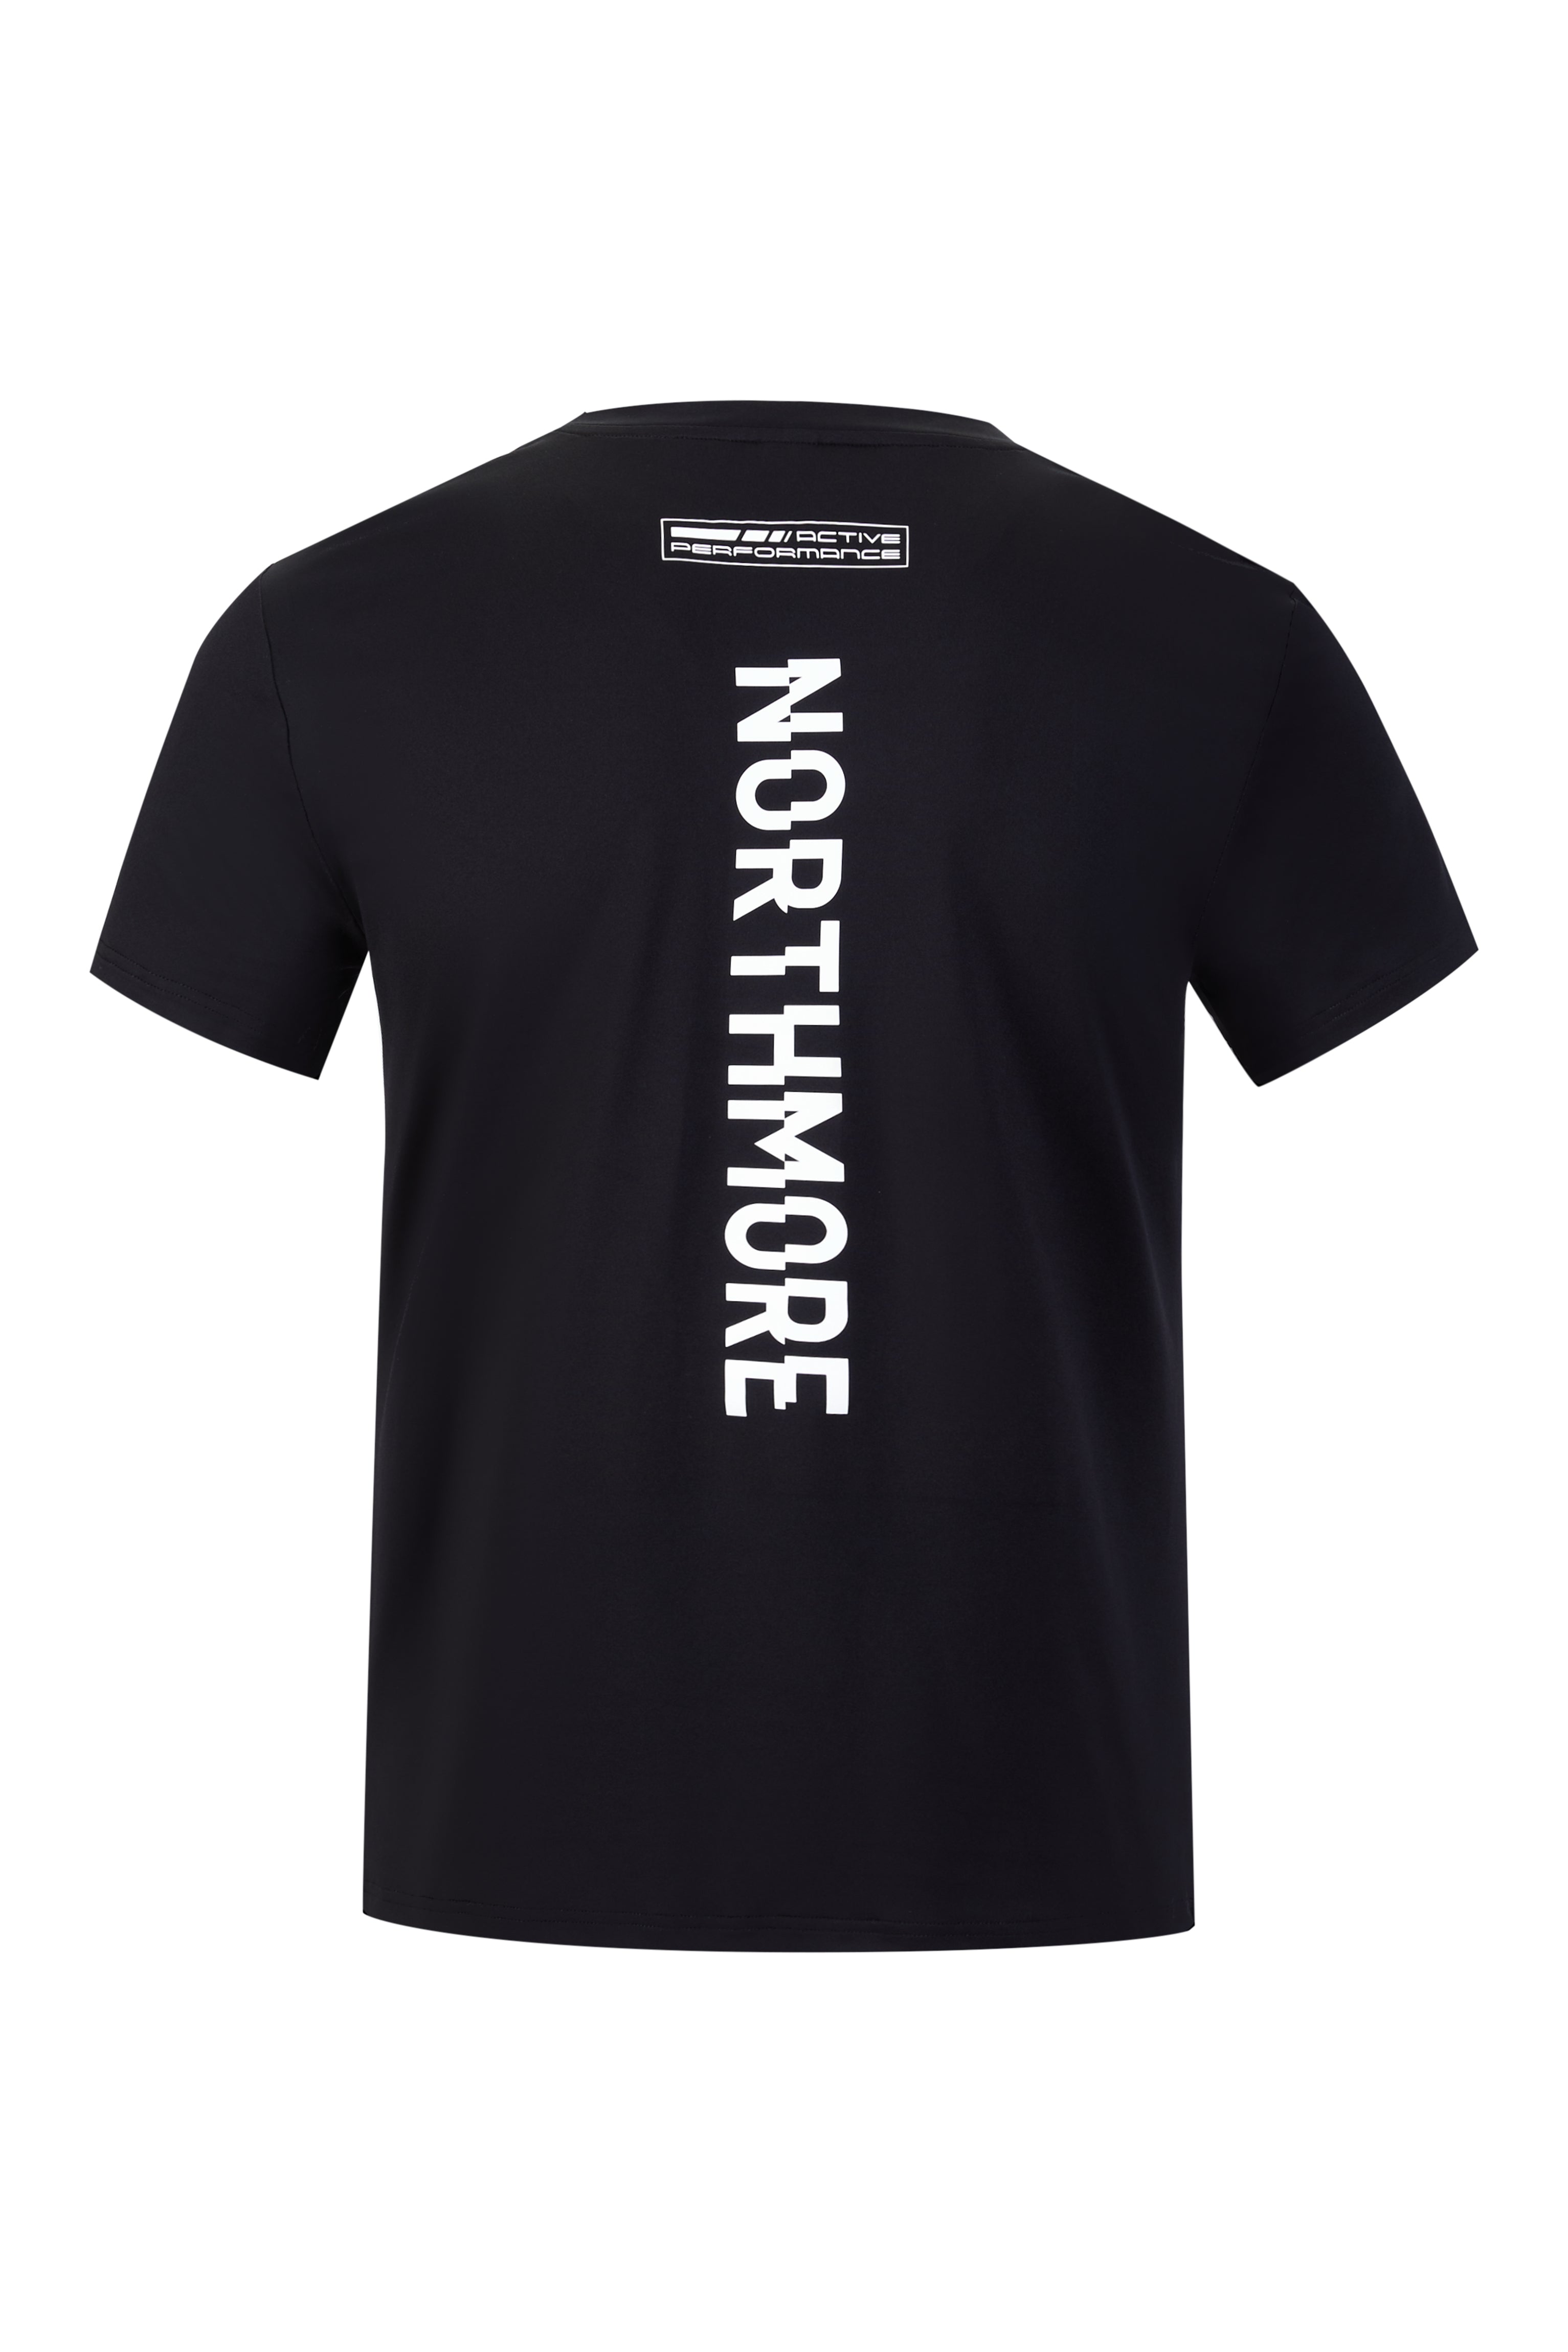 NM T-Shirt